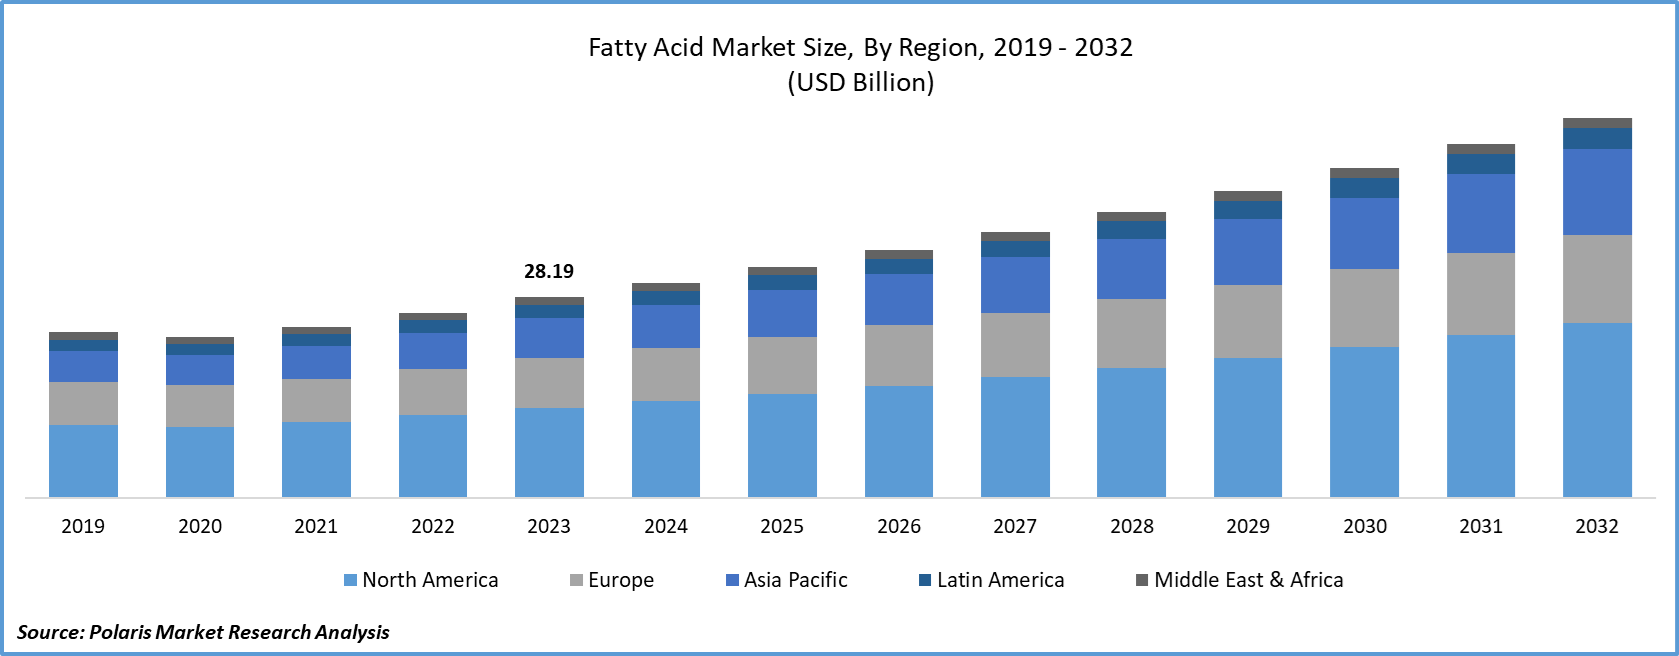 Fatty Acids Market Size